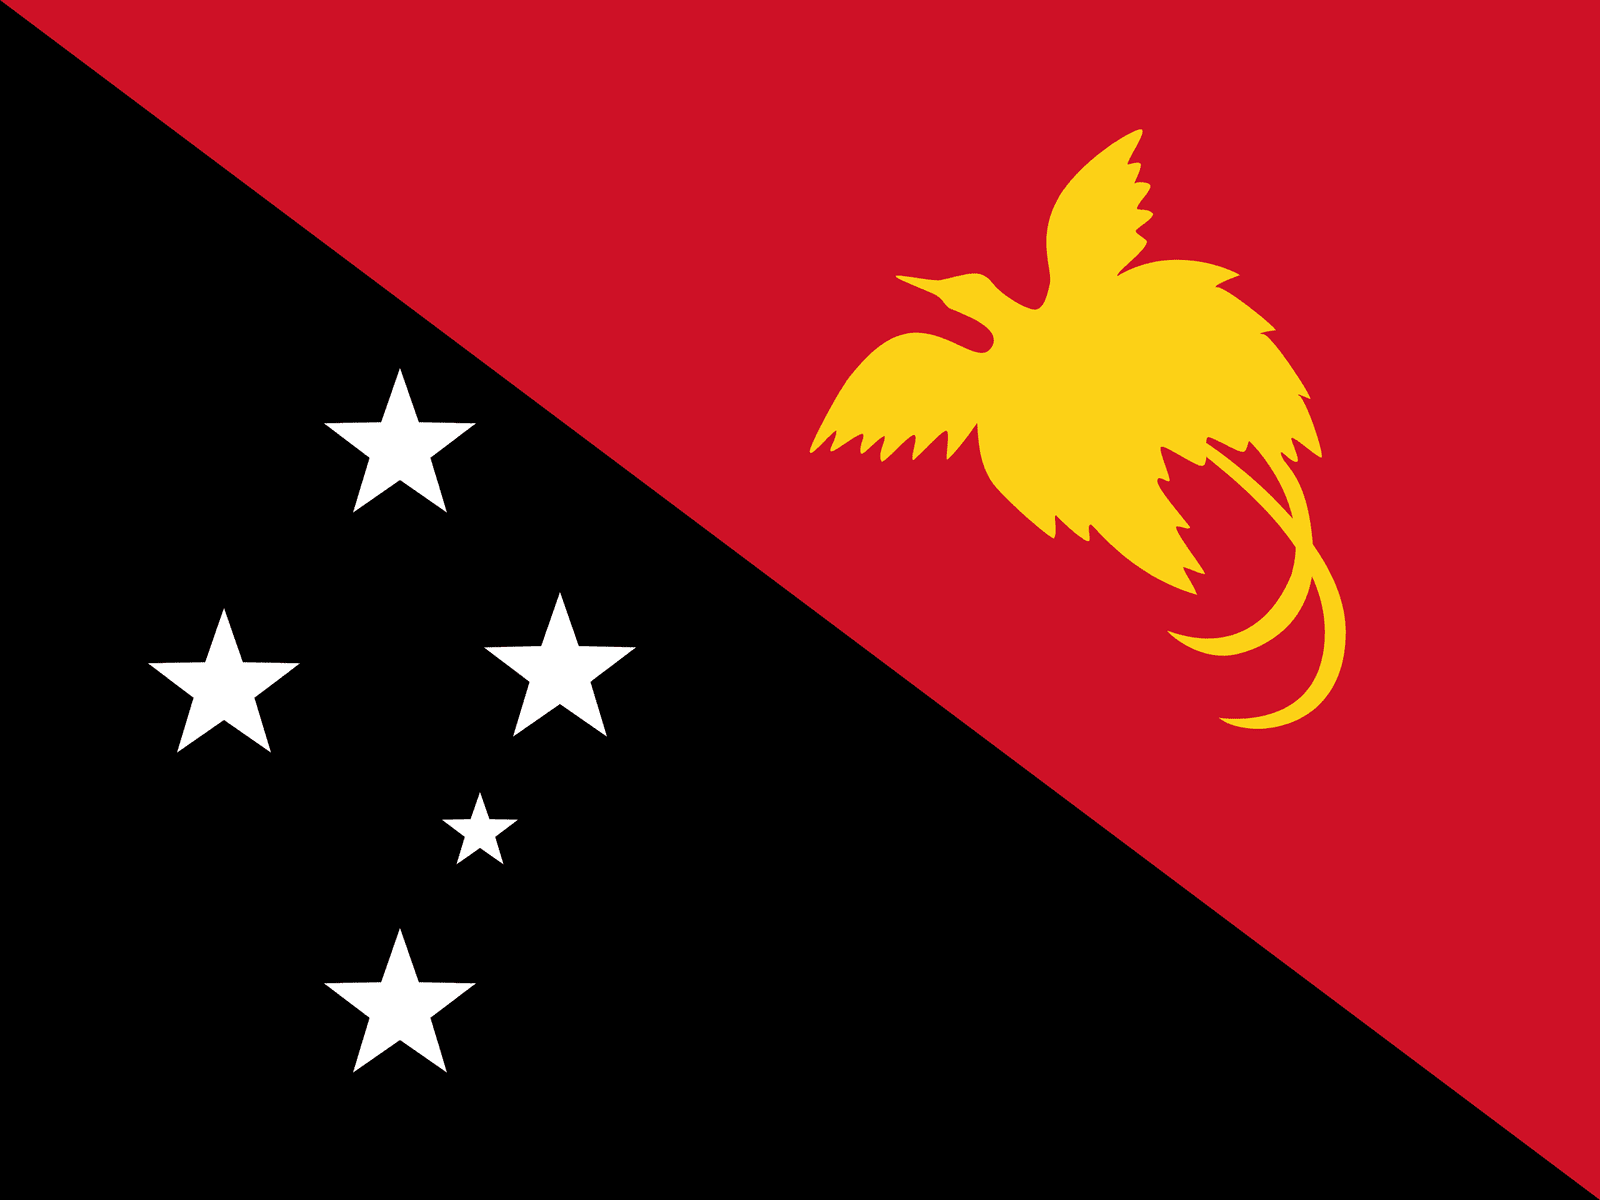 Papua New Guinea - Powered by Eduhyme.com